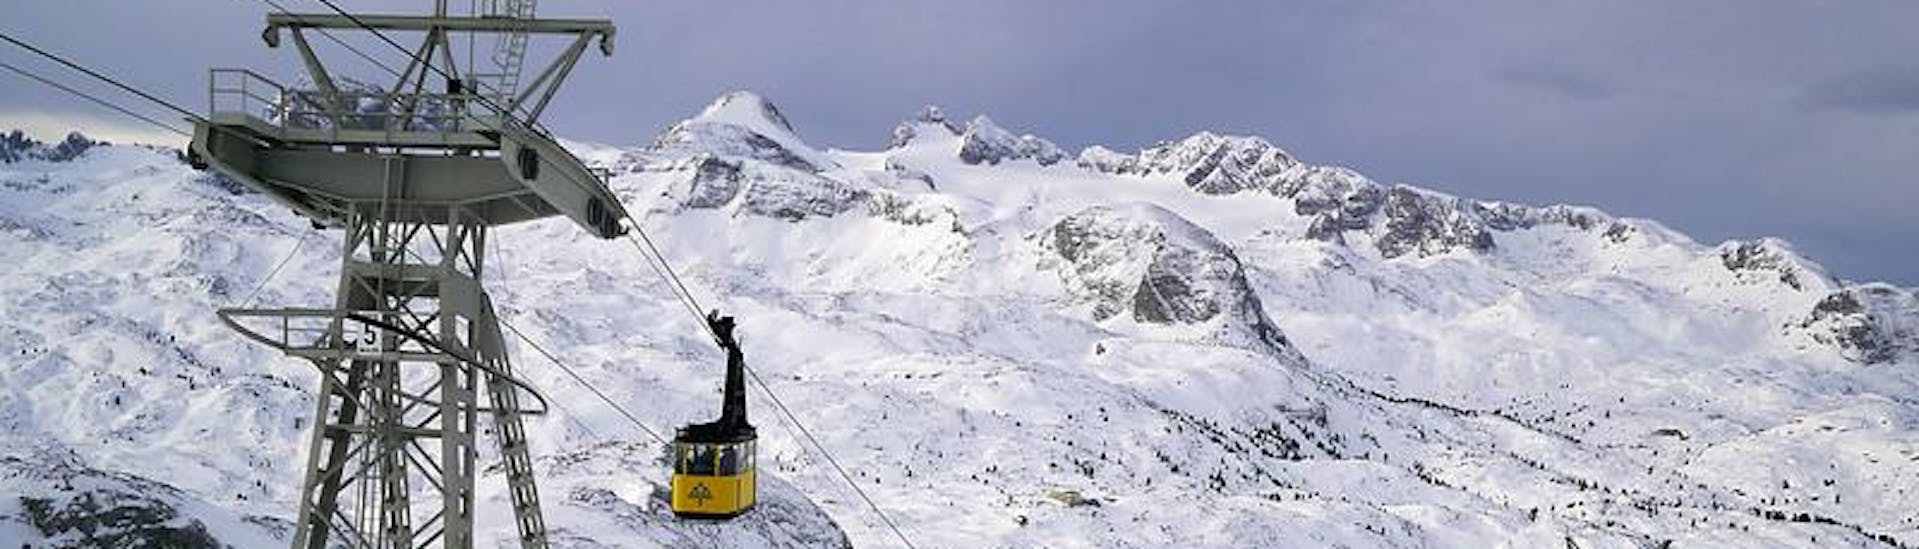 Ausblick auf die sonnige Berglandschaft beim Skifahren lernen mit den Skischulen im Skigebiet Dachstein West.